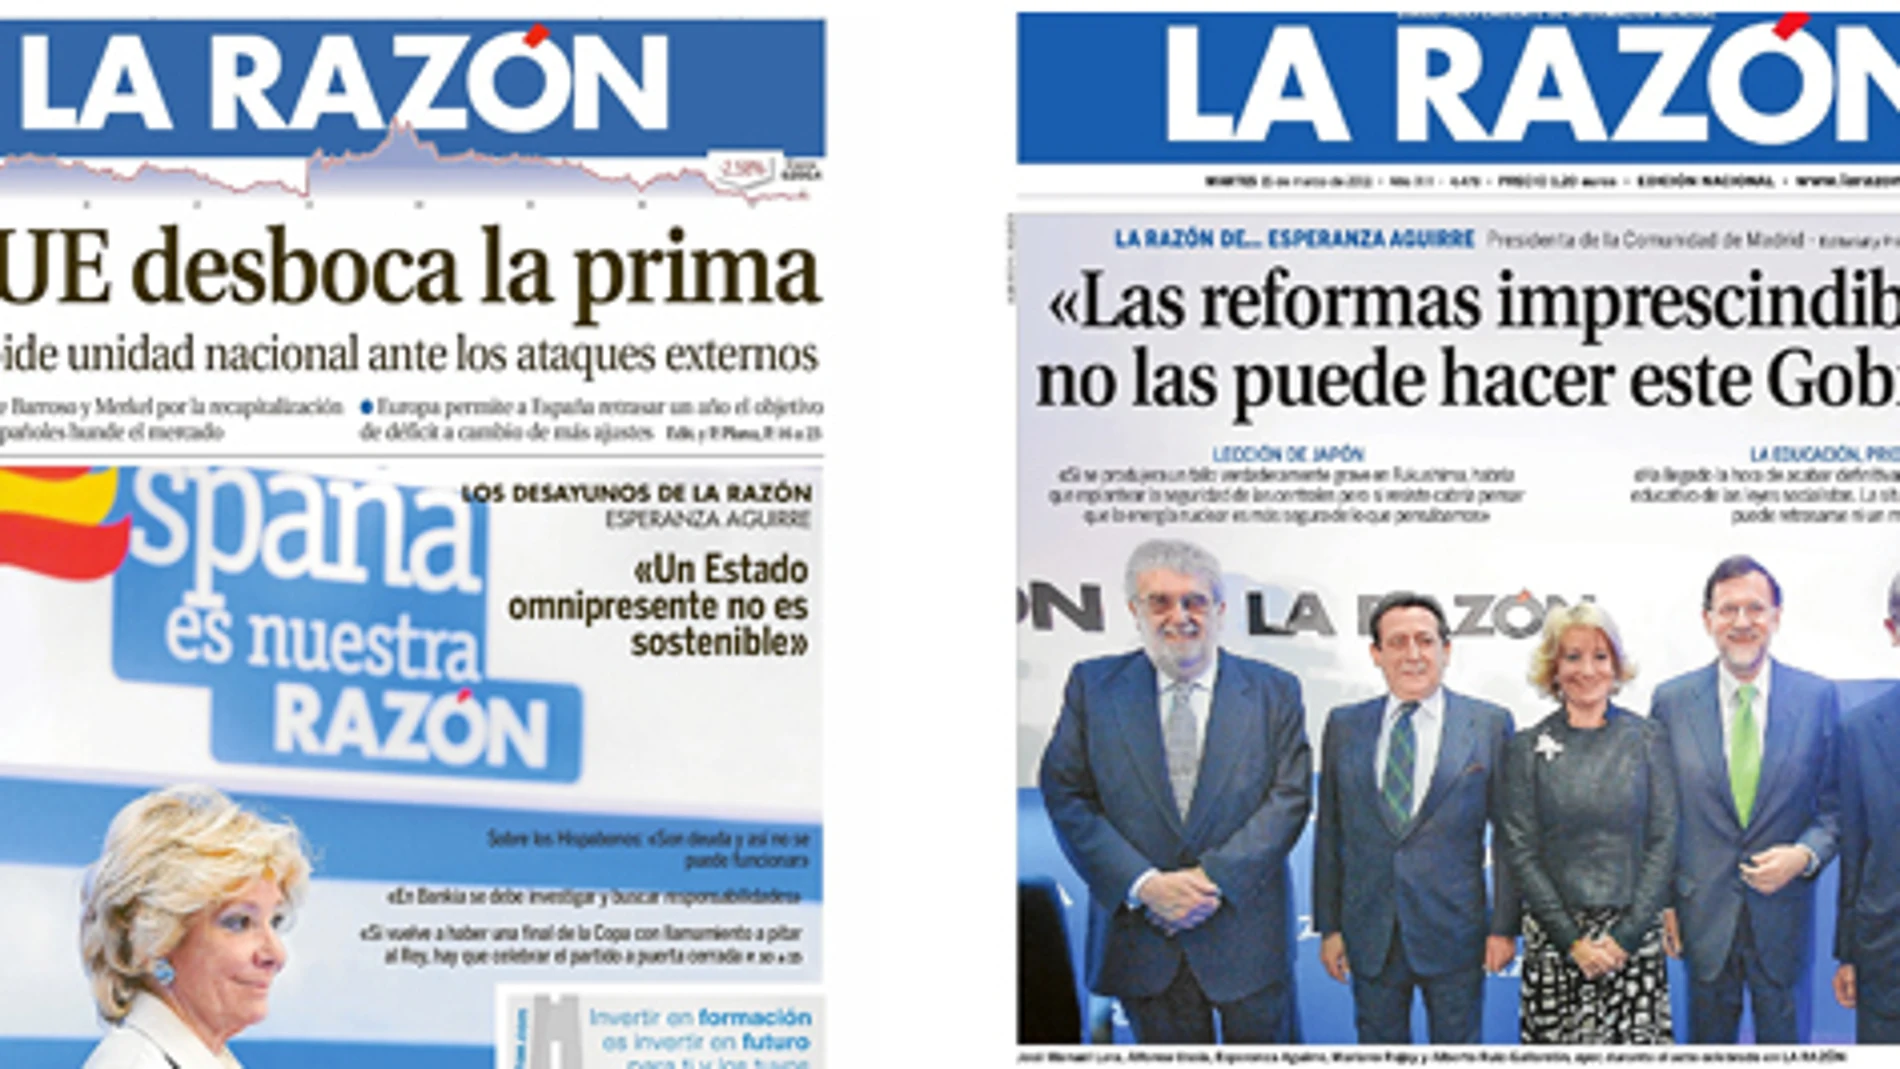 Arriba, la portada del 31 de mayo de 2012 correspondiente a la participación de Aguirre en «Los desayunos de LA RAZÓN»; y en «LA RAZÓN de...» del 15 de marzo de 2011